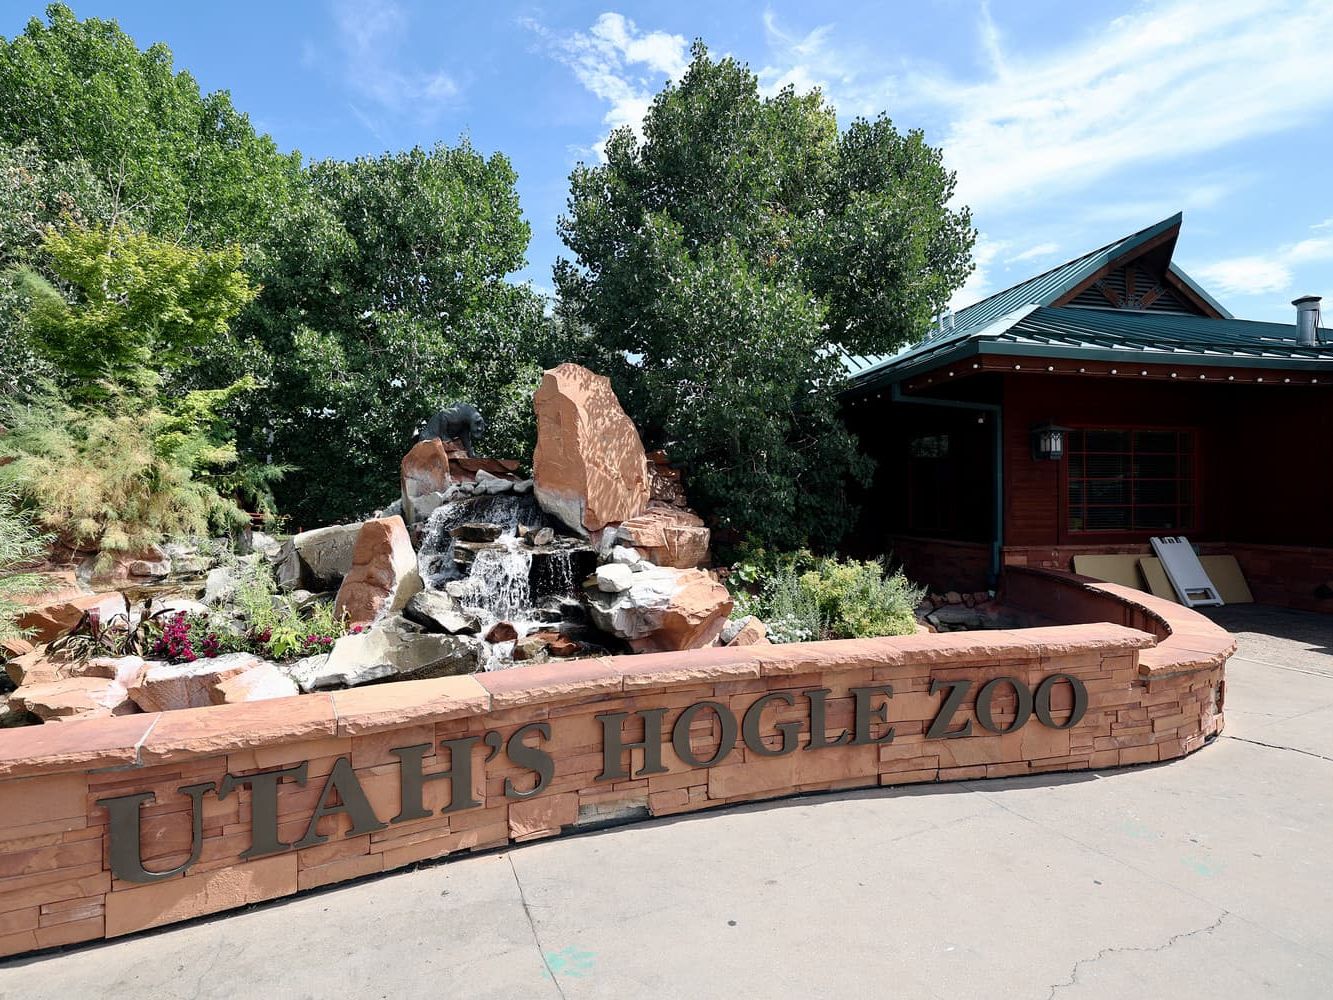 The Hogle Zoo